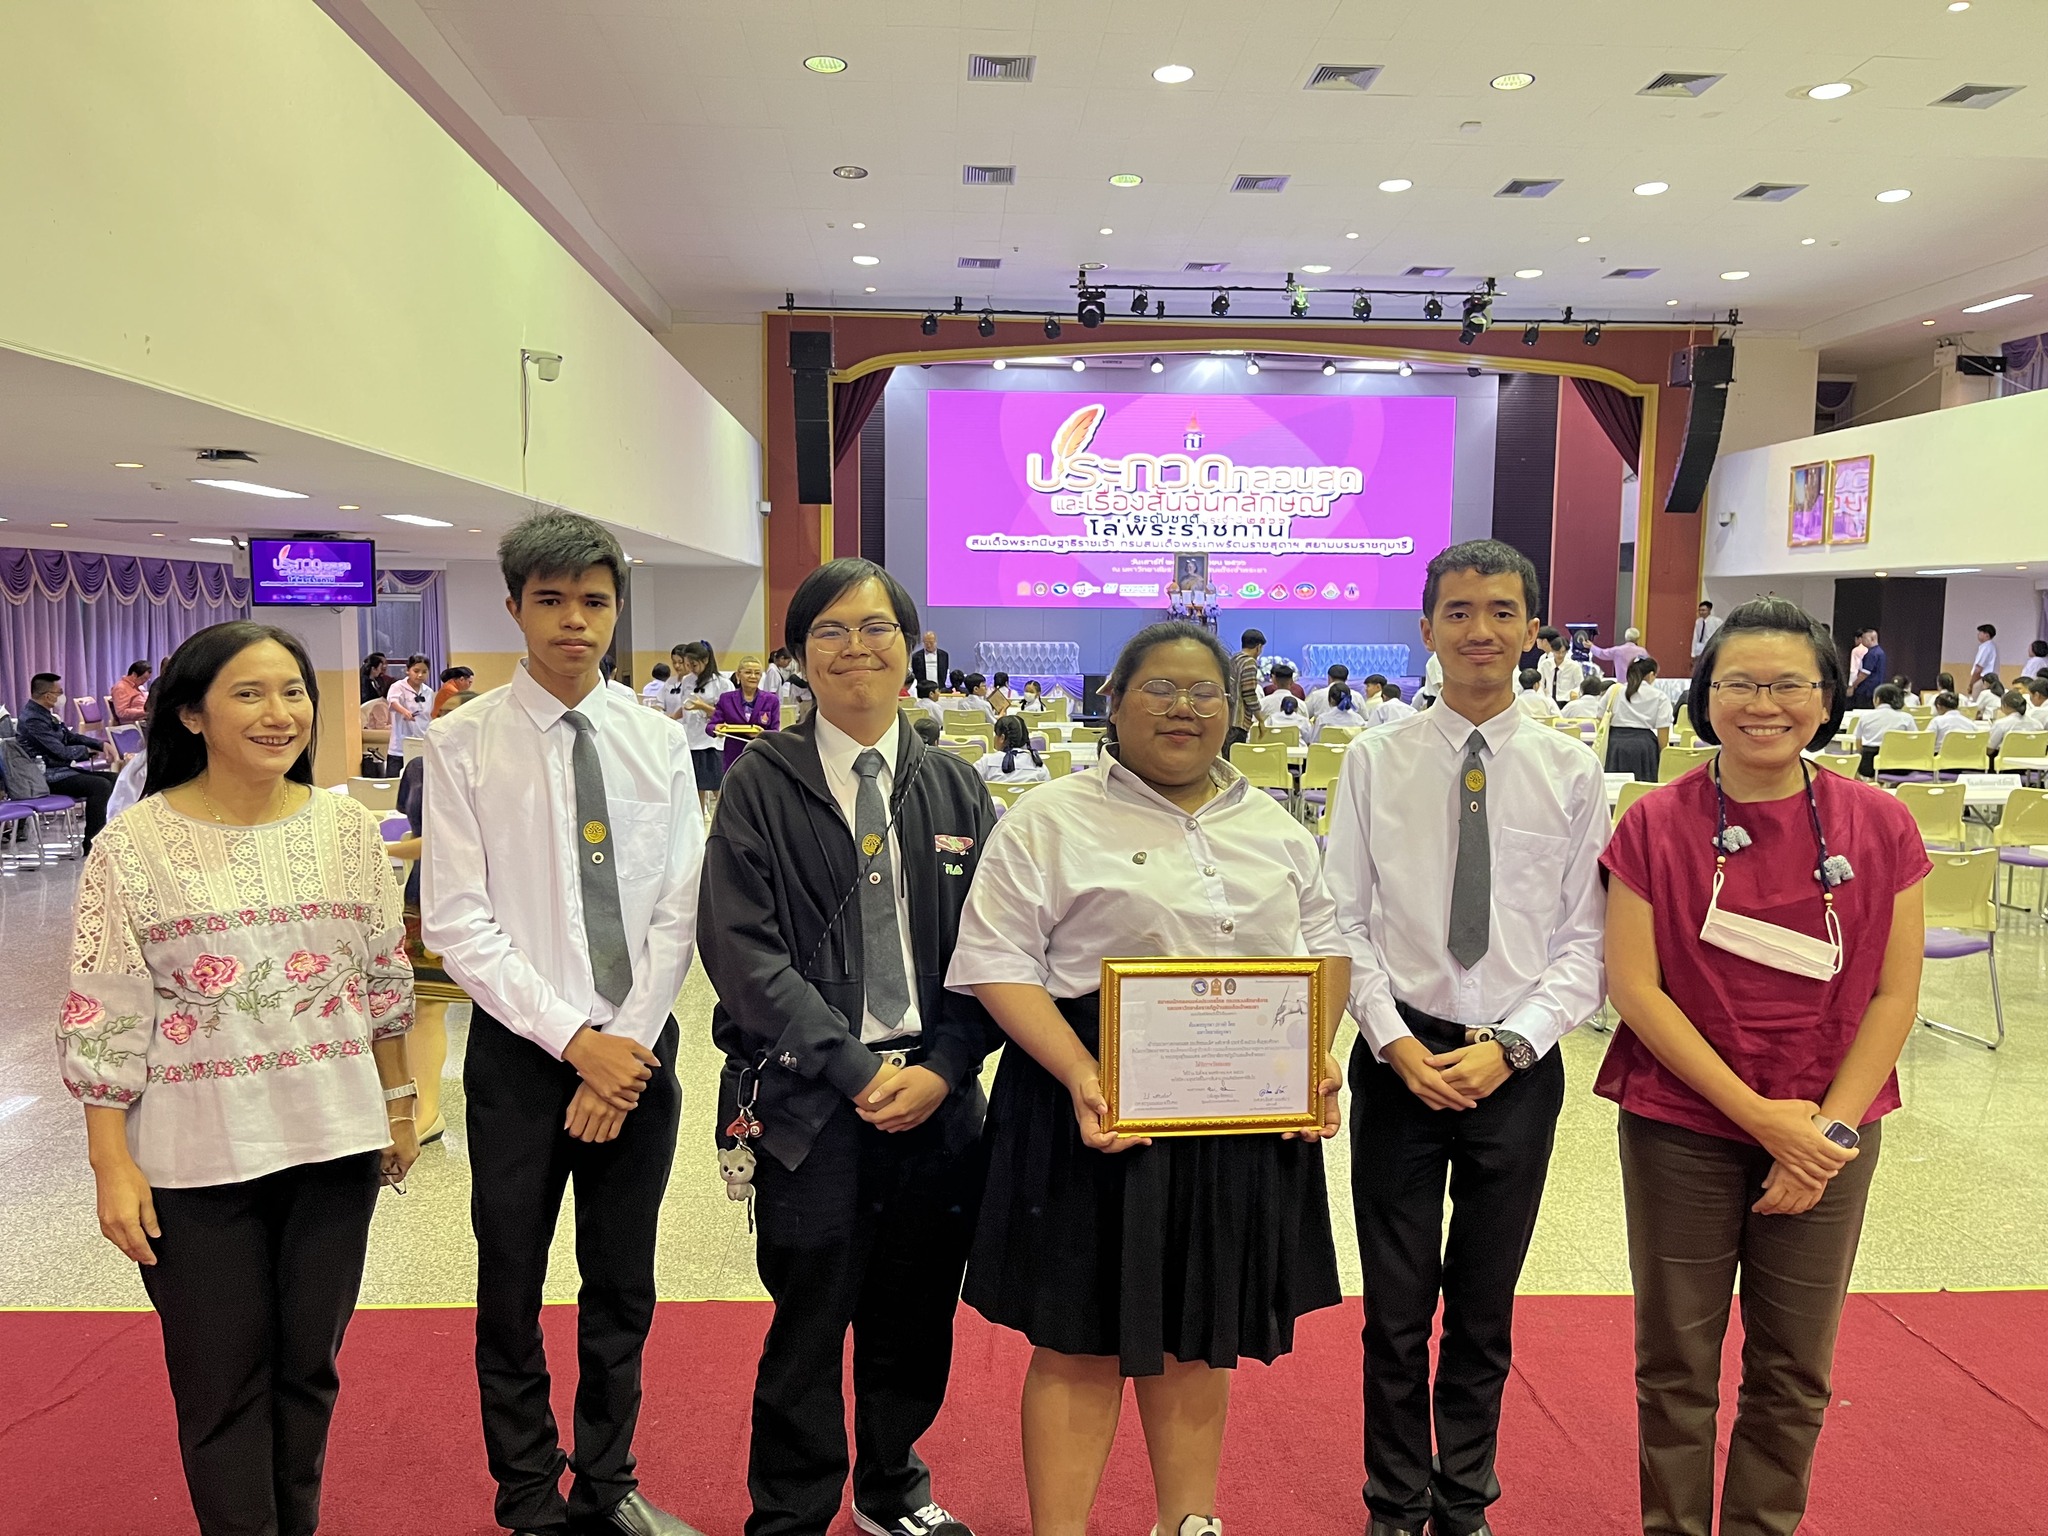 นิสิตภาควิชาภาษาไทยที่ได้รับรางวัลชมเชย การประกวดกลอนสด รอบชิงชนะเลิศ ระดับชาติ ประจำปี 2566